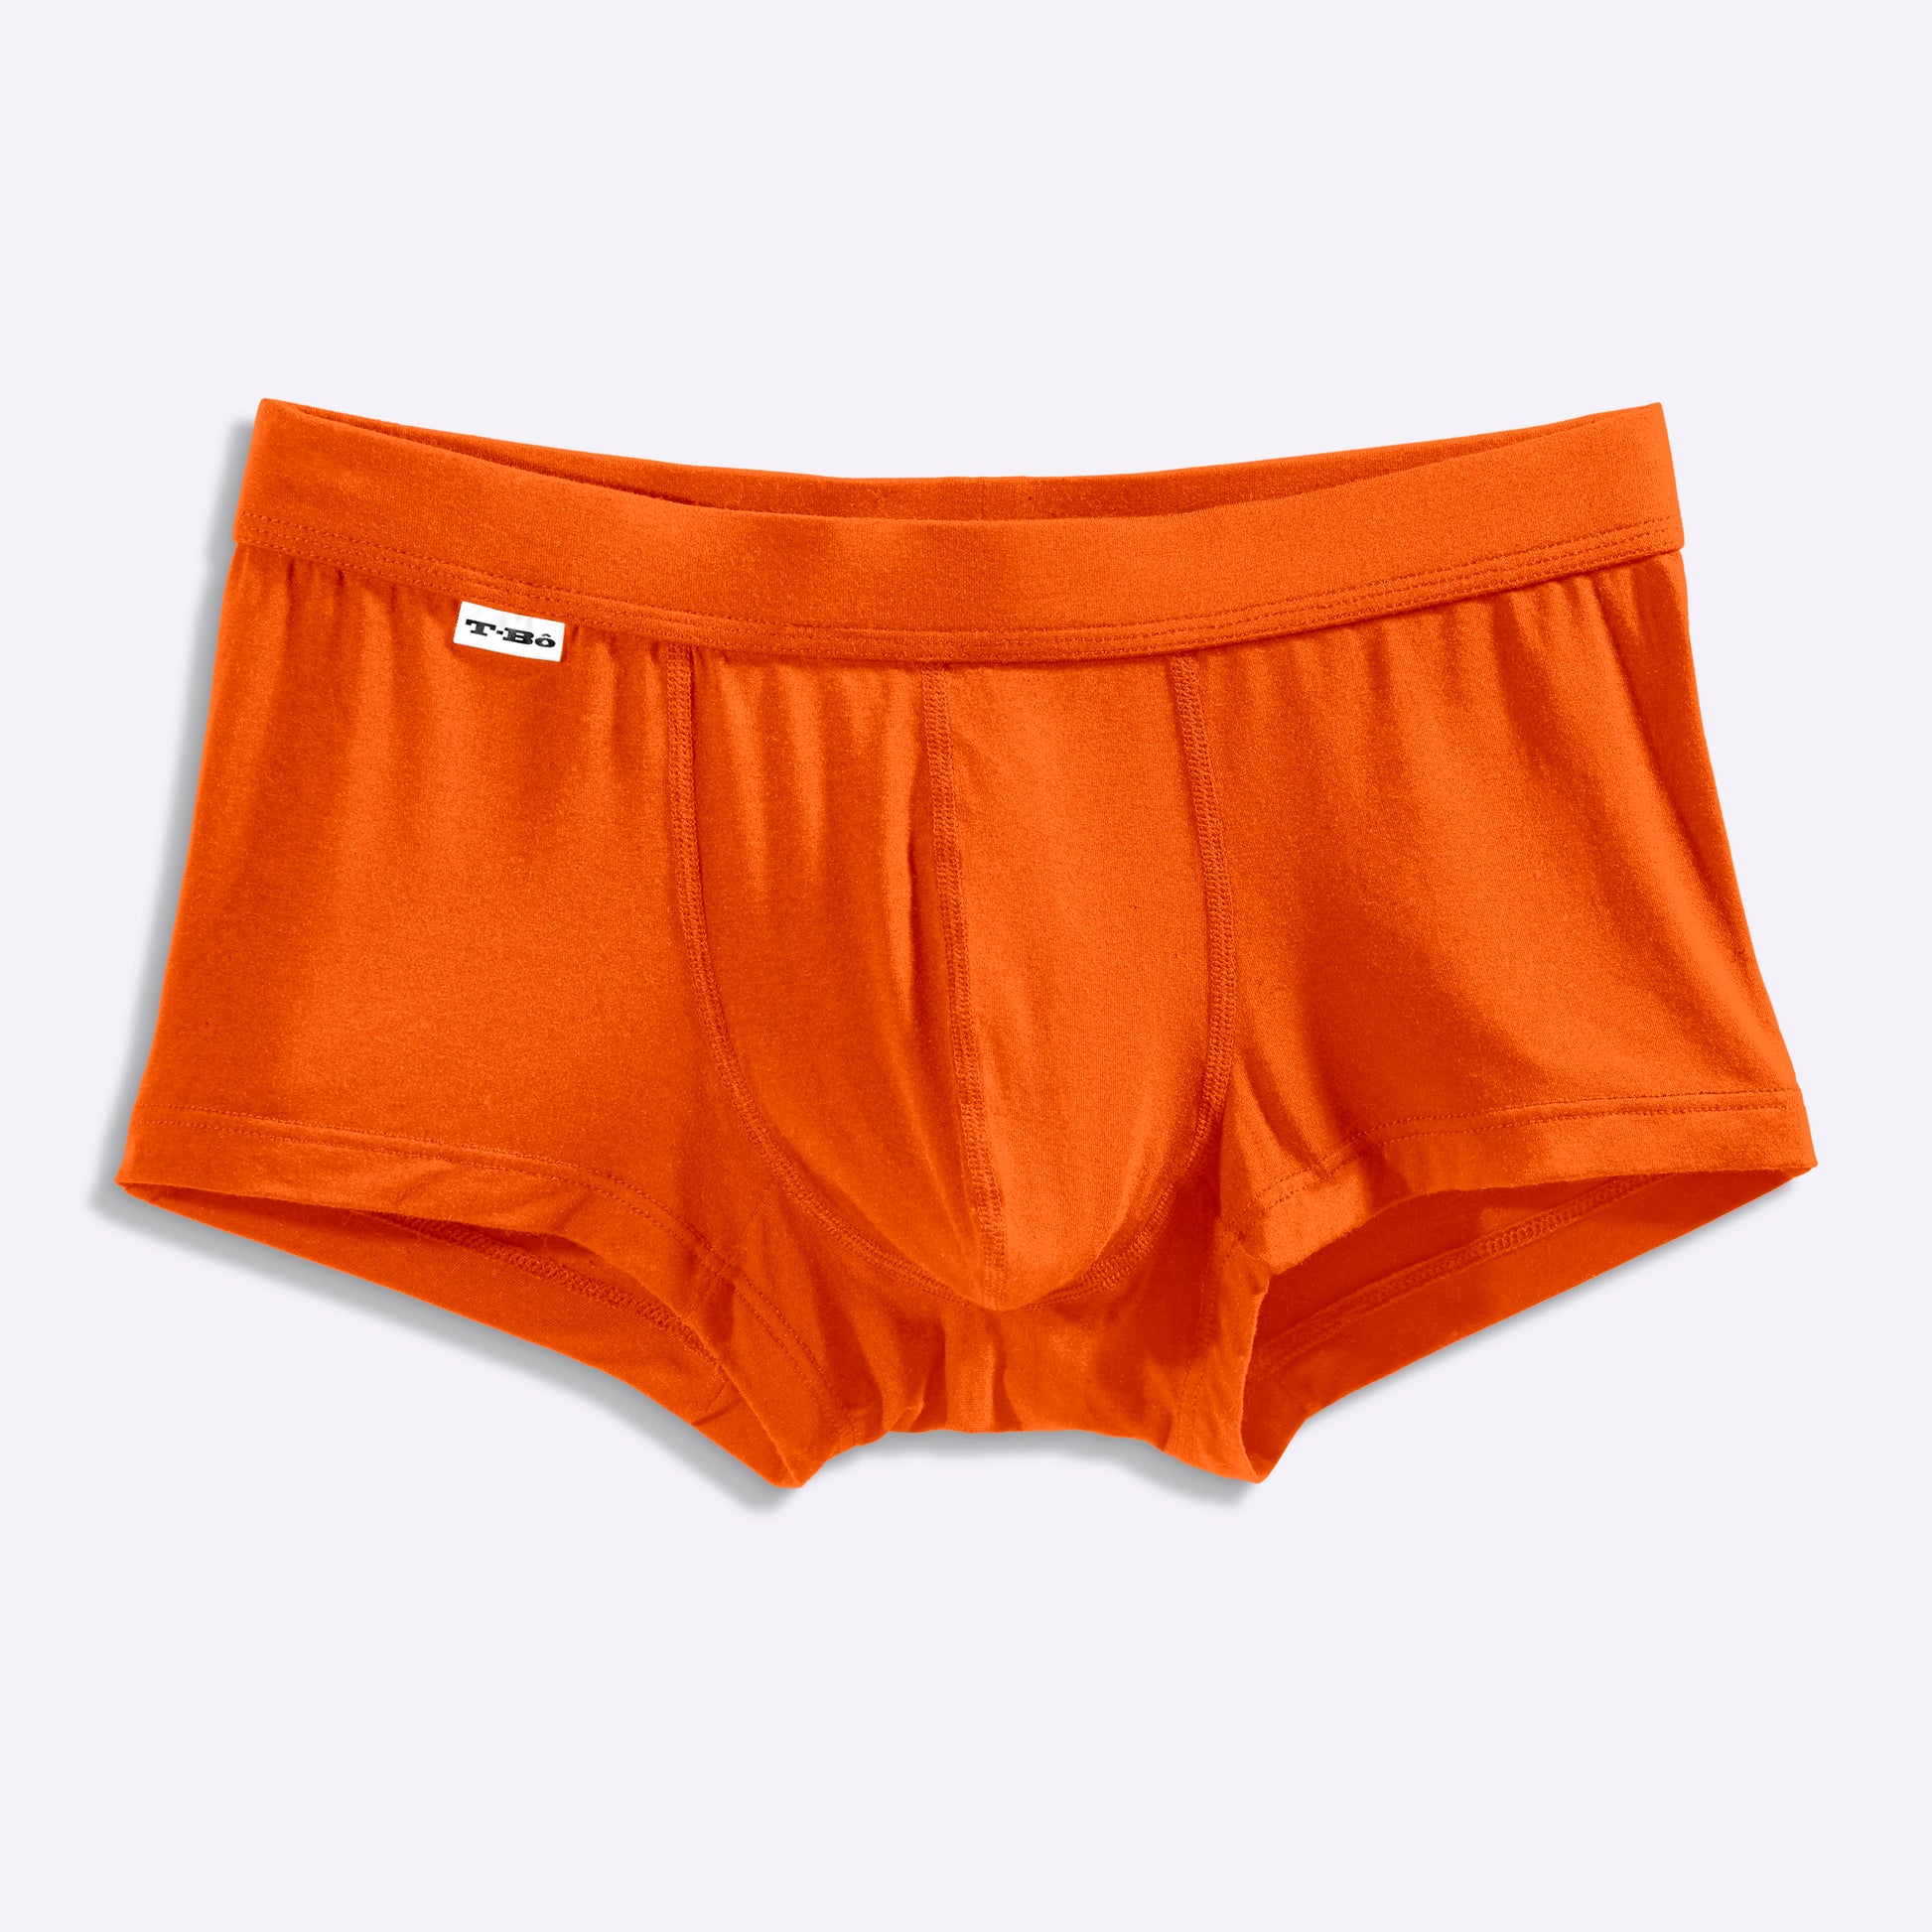 Meundies NWOT Orange Tiger Stripes trunk underwear size Small